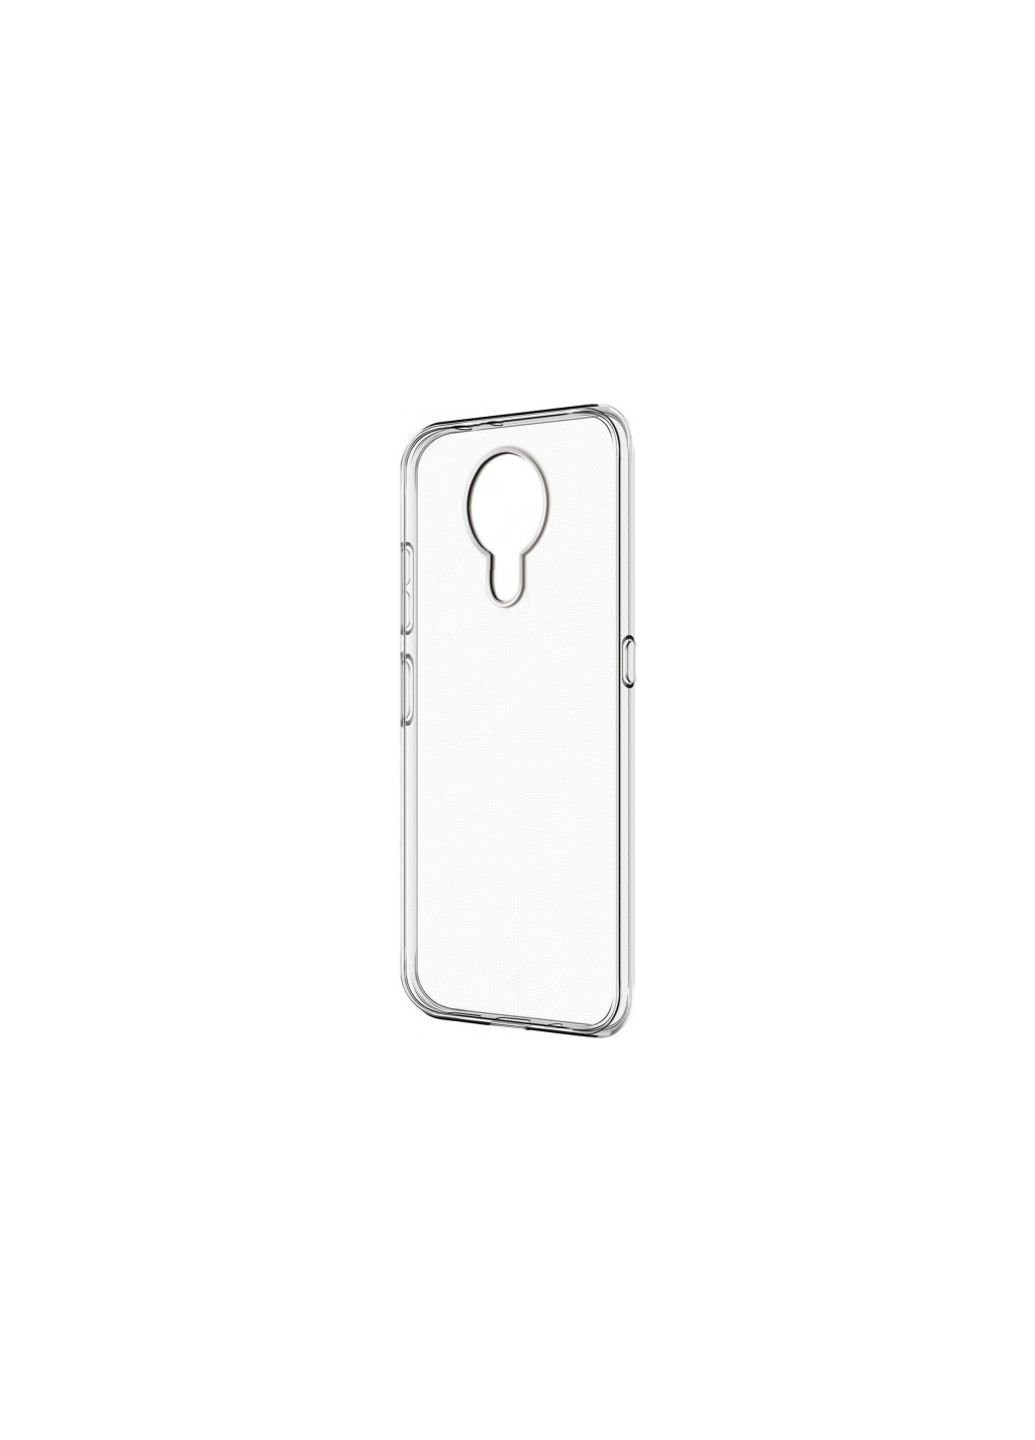 Чехол для мобильного телефона Air Series Nokia G10/G20 Transparent (ARM59438) ArmorStandart (252573041)